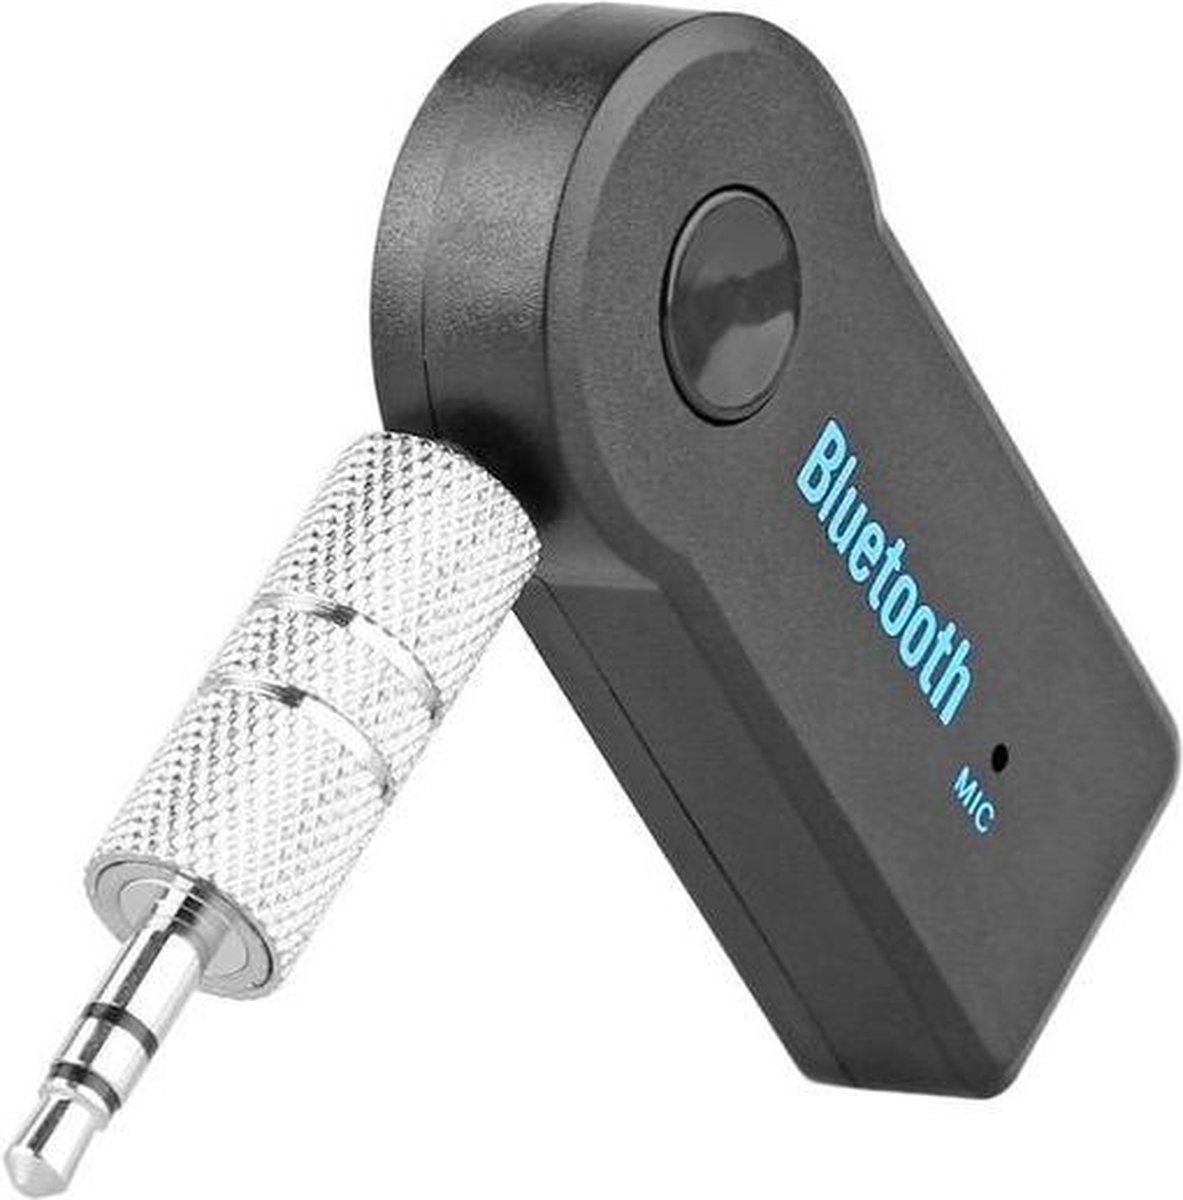 Bluetooth Adapter Draadloos Receiver Auto Carkit Muziek AUX Audio